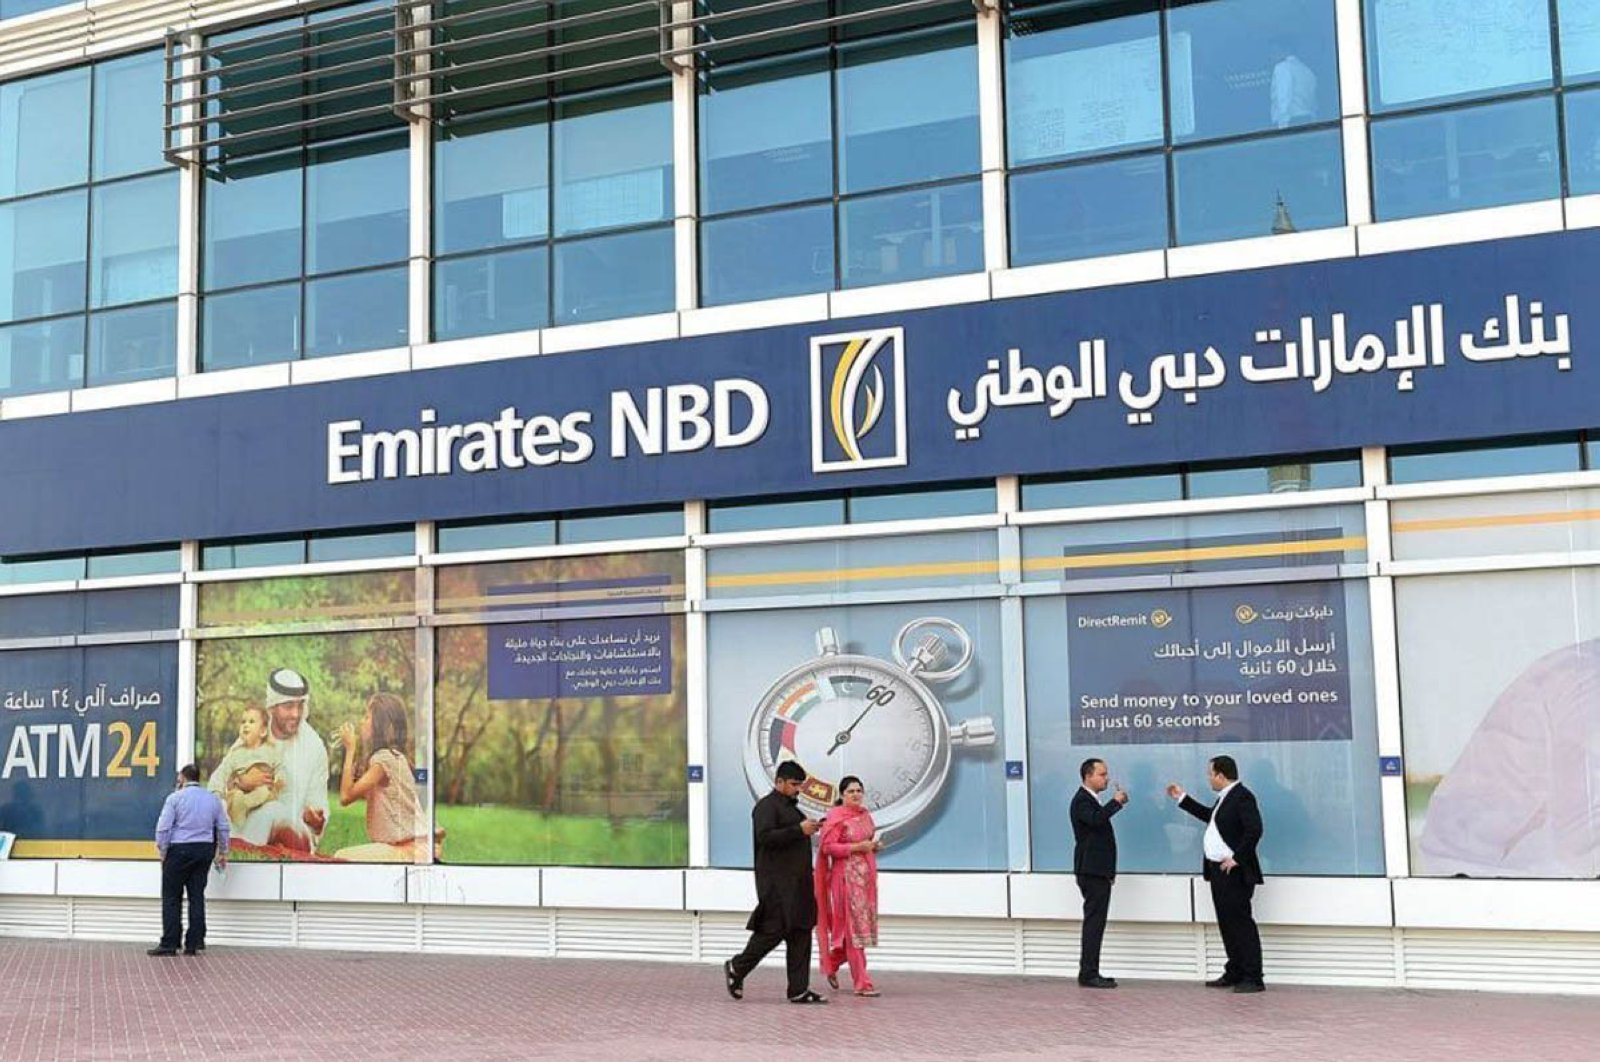 Emirates nbd bank. NBD банк Дубай. Emirates NBD. НБД Emirates. Emirates NDB банк.